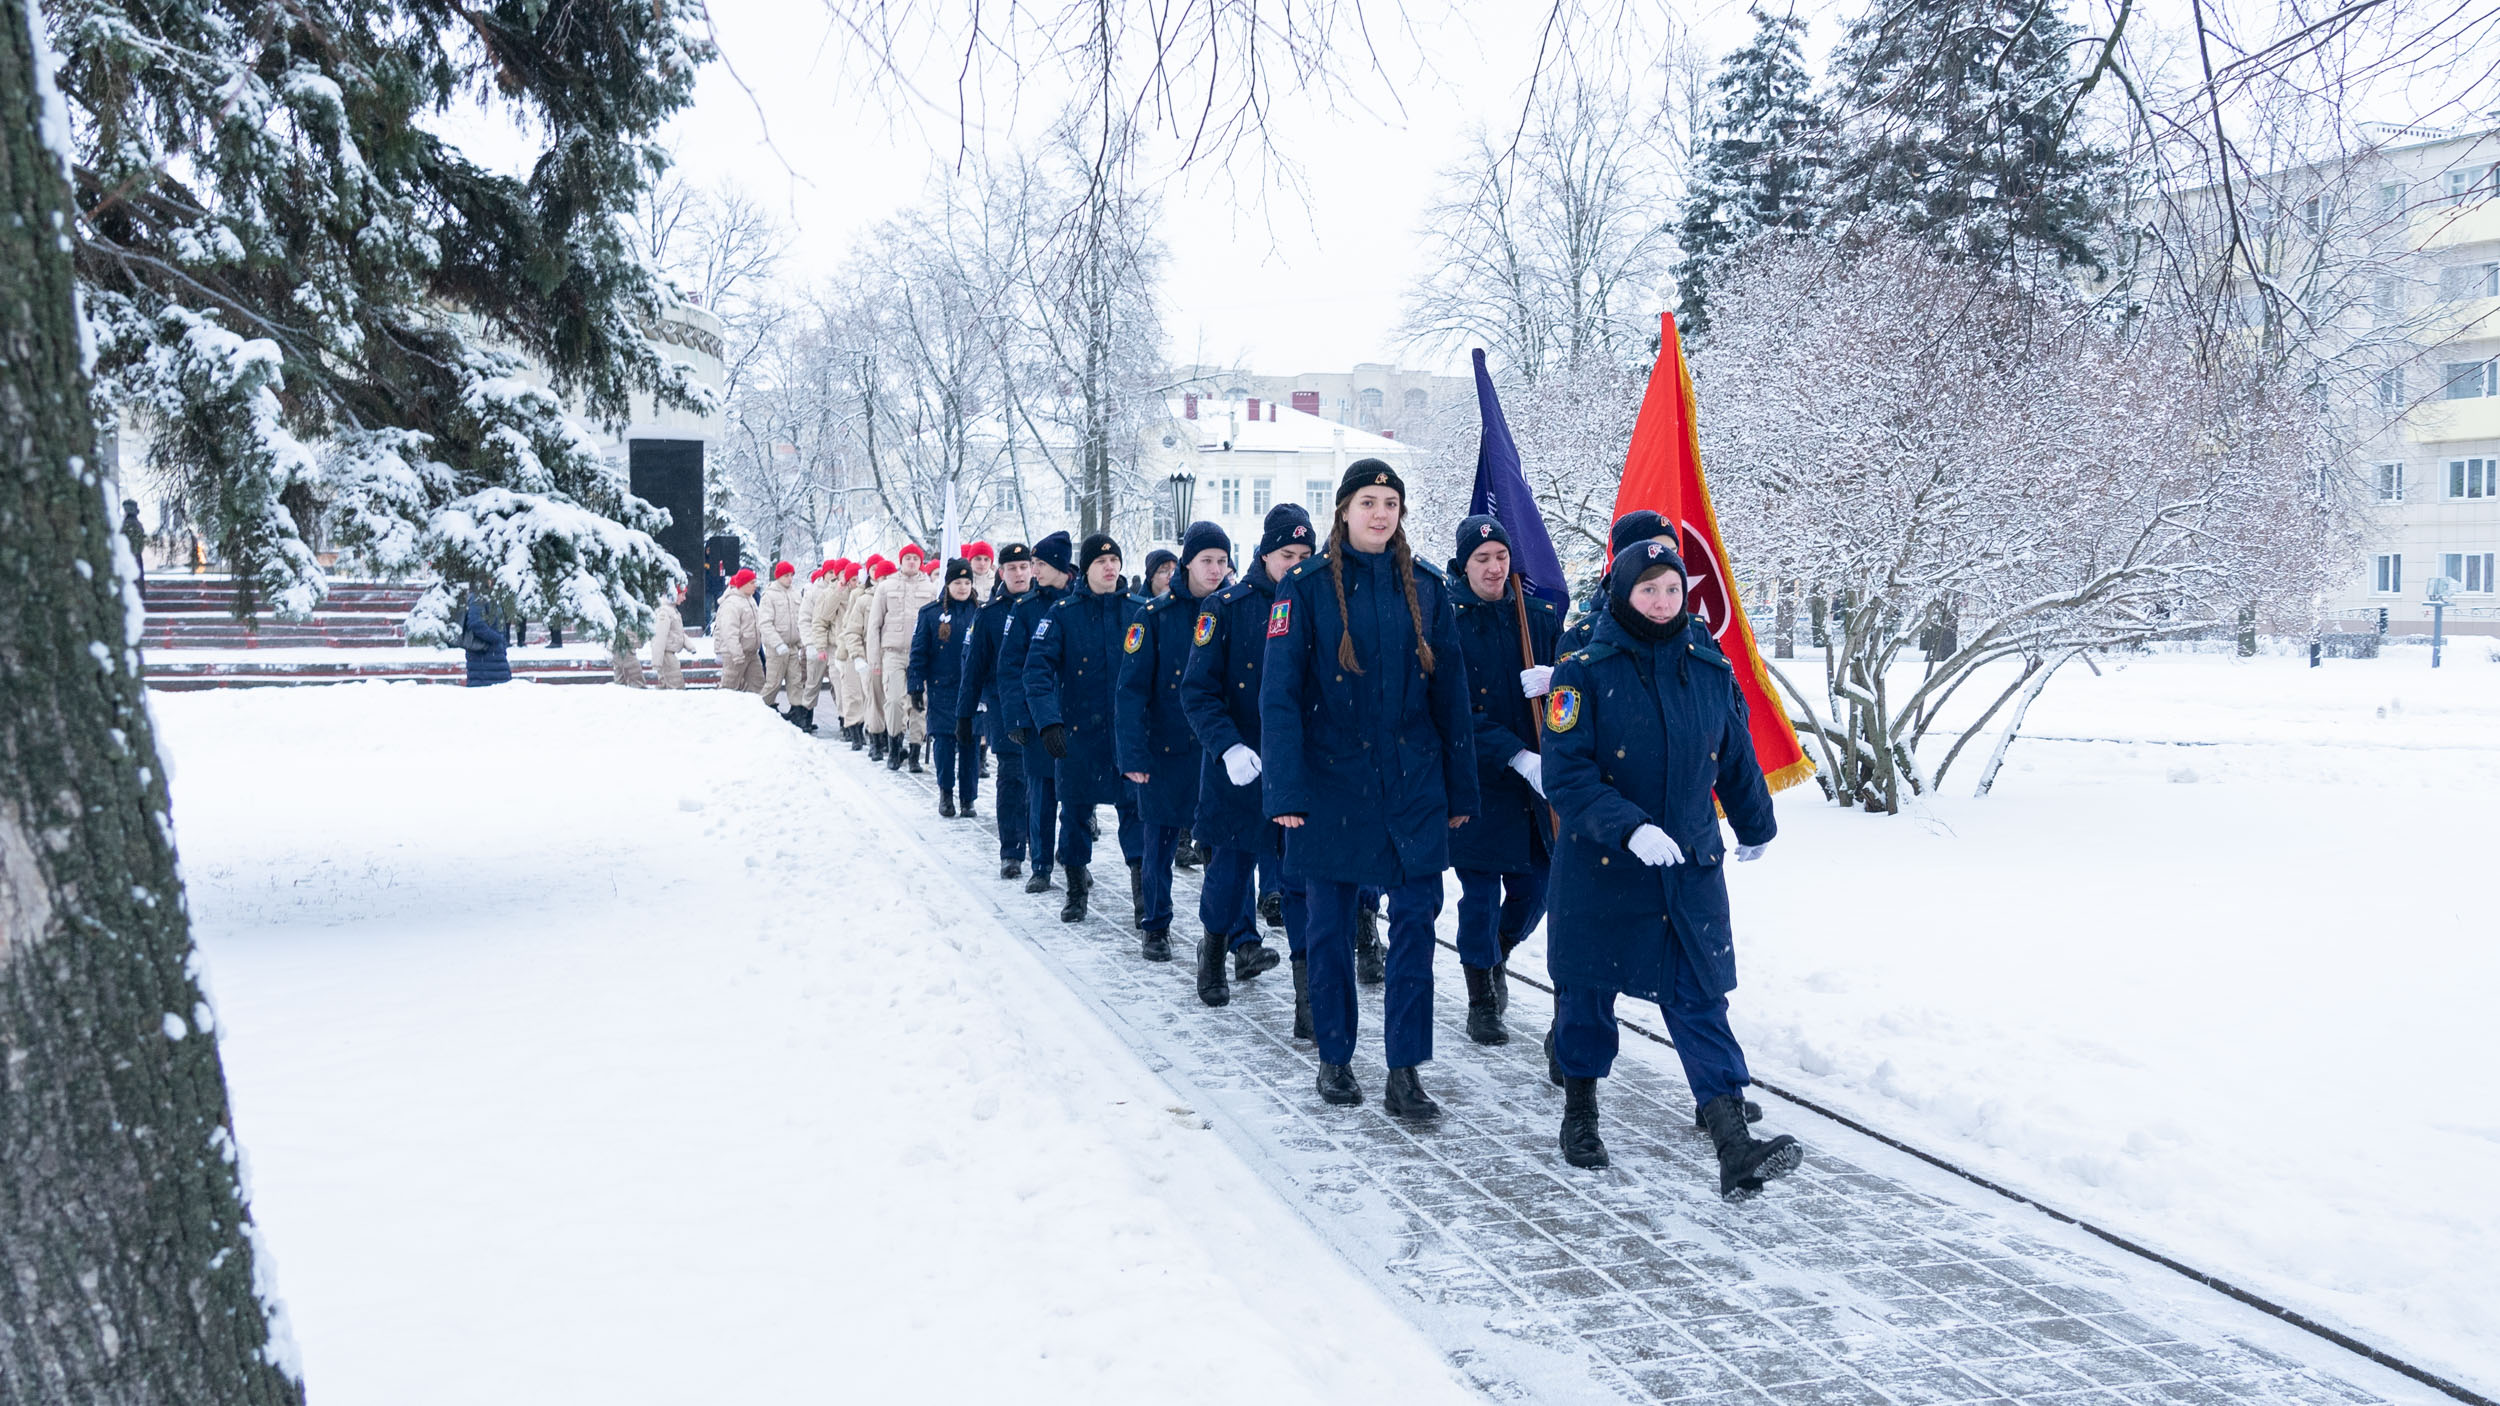 Державинцы – участники Марша памяти, посвященного 80-летию победы в Сталинградской битве фото анонса